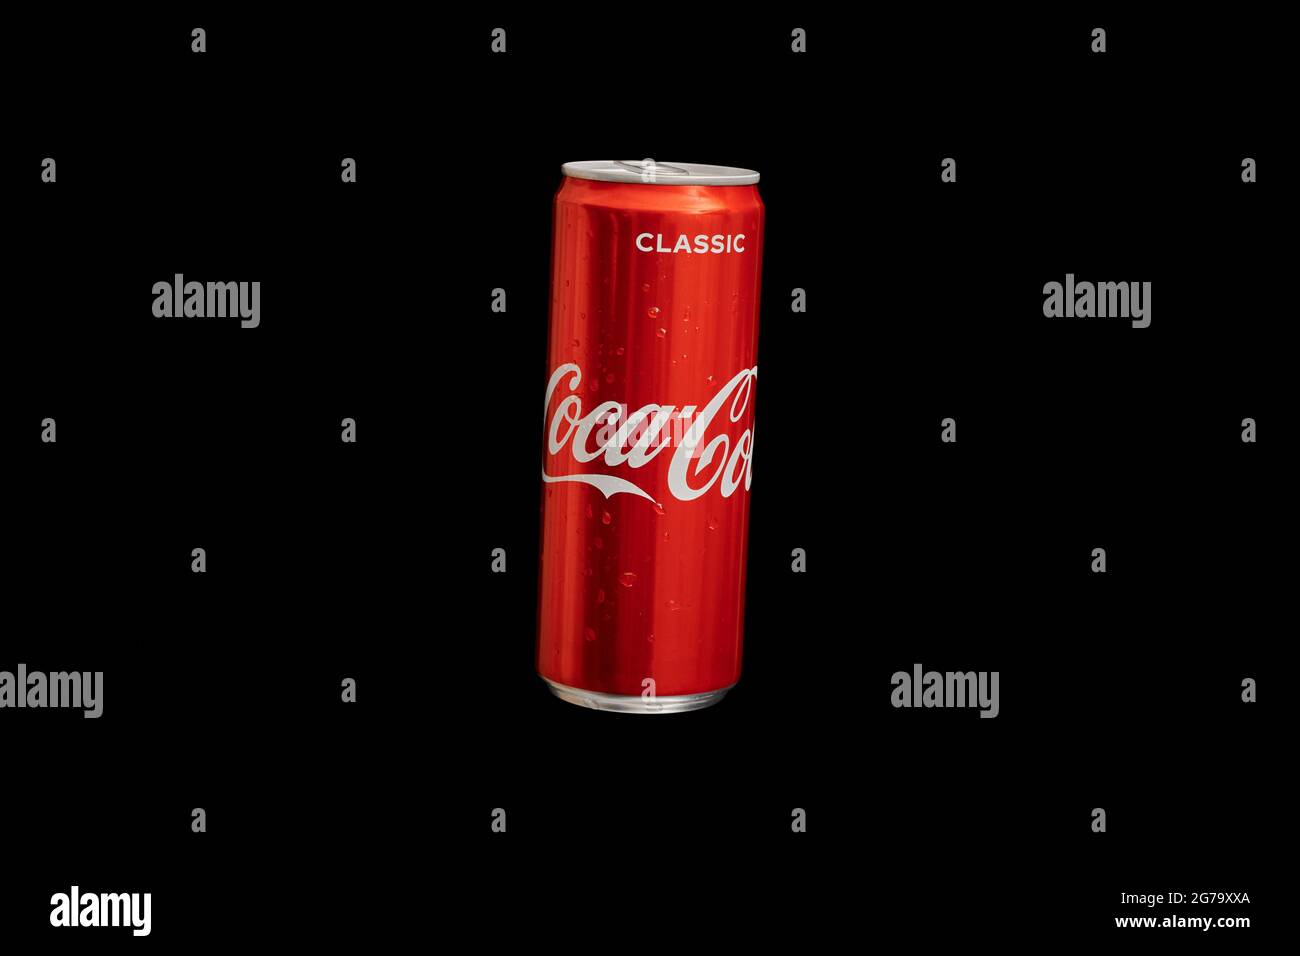 KÖNIGSBERG, RUSSLAND - 13. MÄRZ 2021 - Coca-Cola-Dose, schwarzer  Hintergrund. Klassisches Cola-Glas, kohlensäurehaltiges  Erfrischungsgetränk. Hergestellt von der Coca-Cola Company Stockfotografie  - Alamy